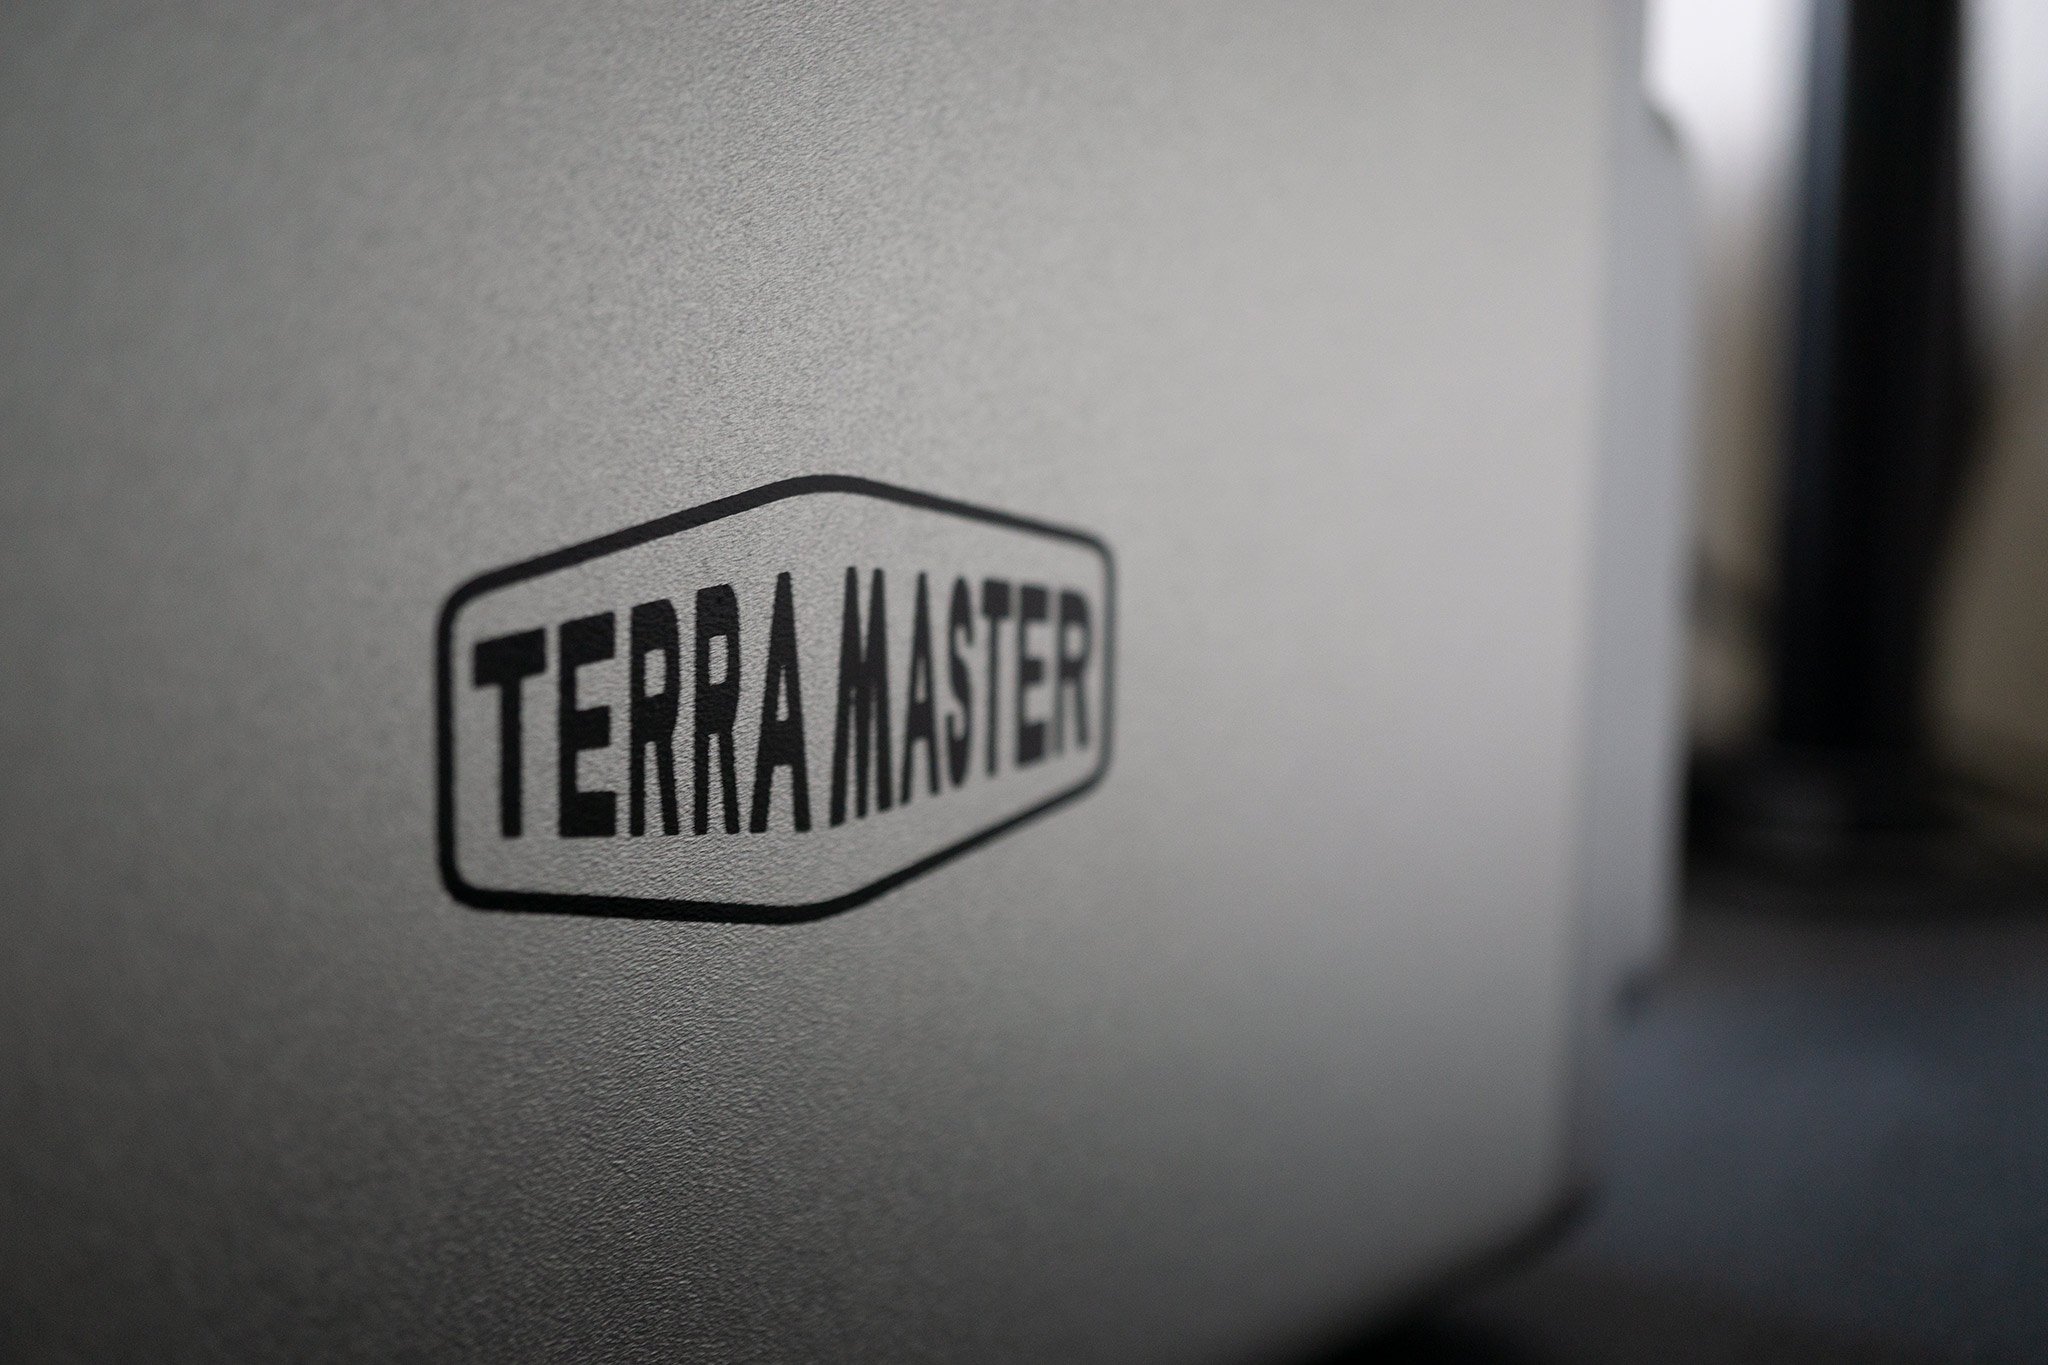 terramaster-f4220-nas.jpg